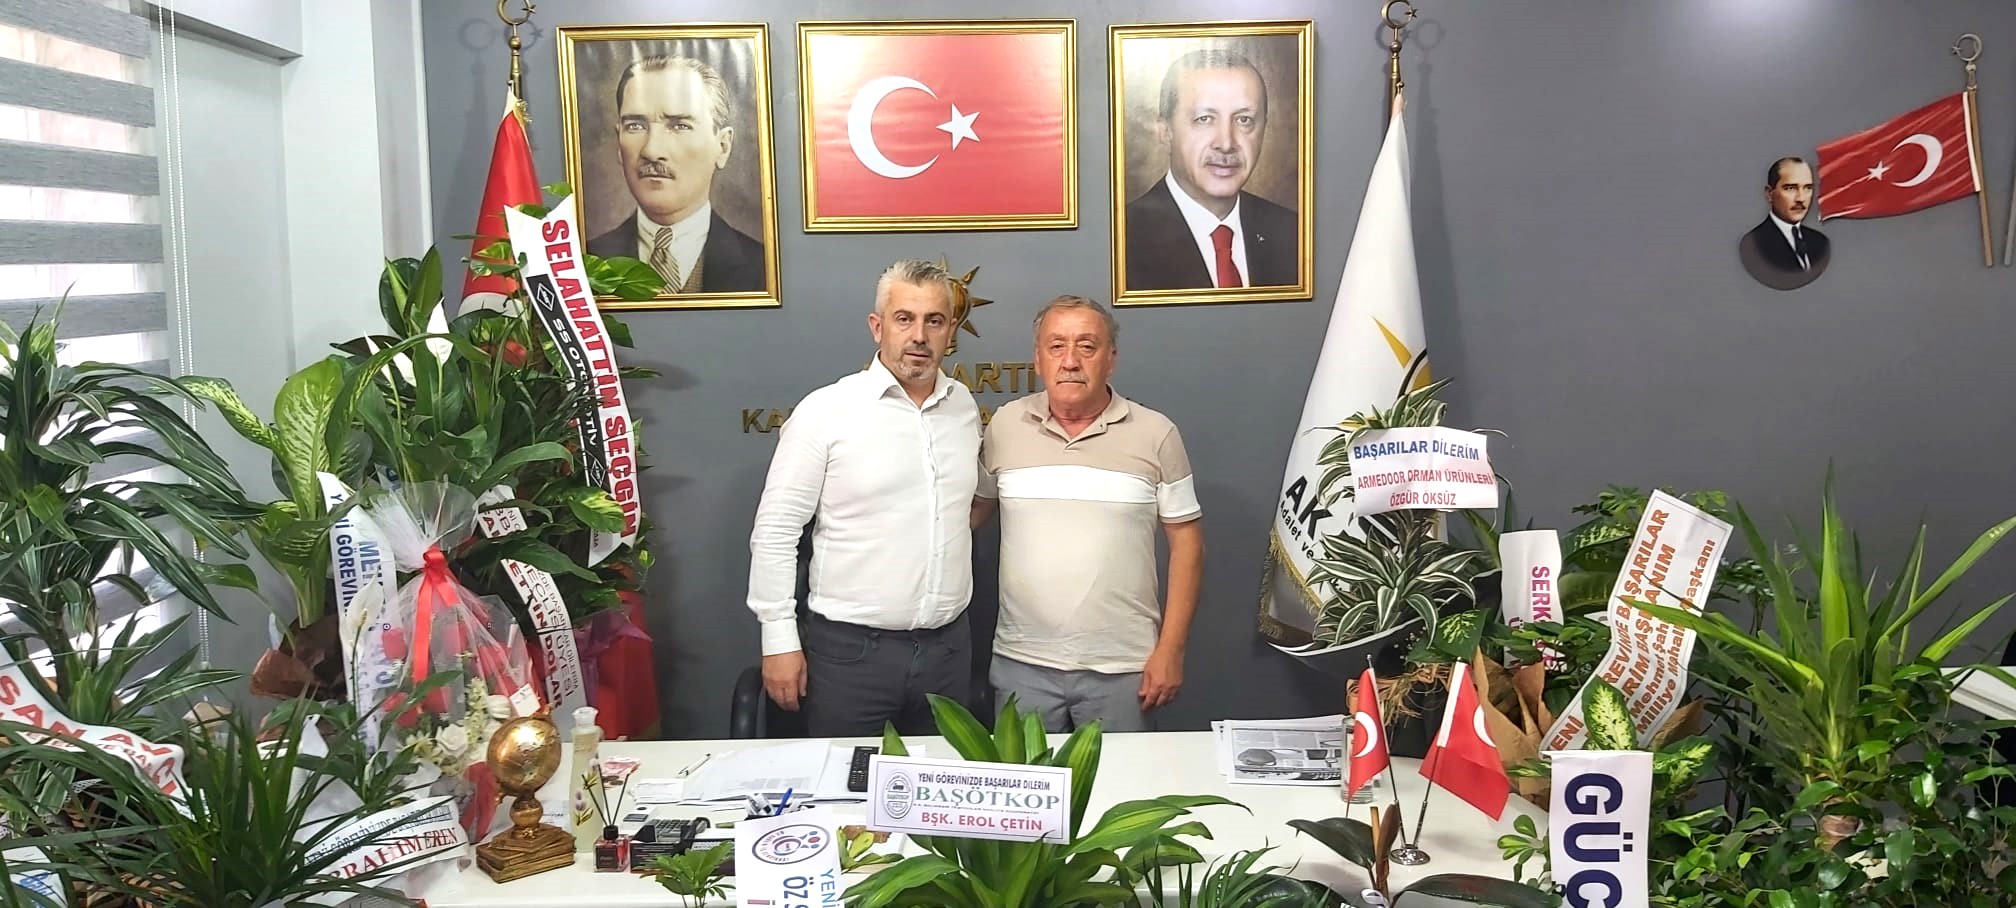 Balıkesir Dursunbeyliler Dernek Başkanı, Balat Gazetesi imtiyaz sahibi Rahmi Kireç AK Parti Karesi İlçe Başkanlığına atanan Hakan Aka’ya hayırlı olsun ziyaretlerinde bulundu